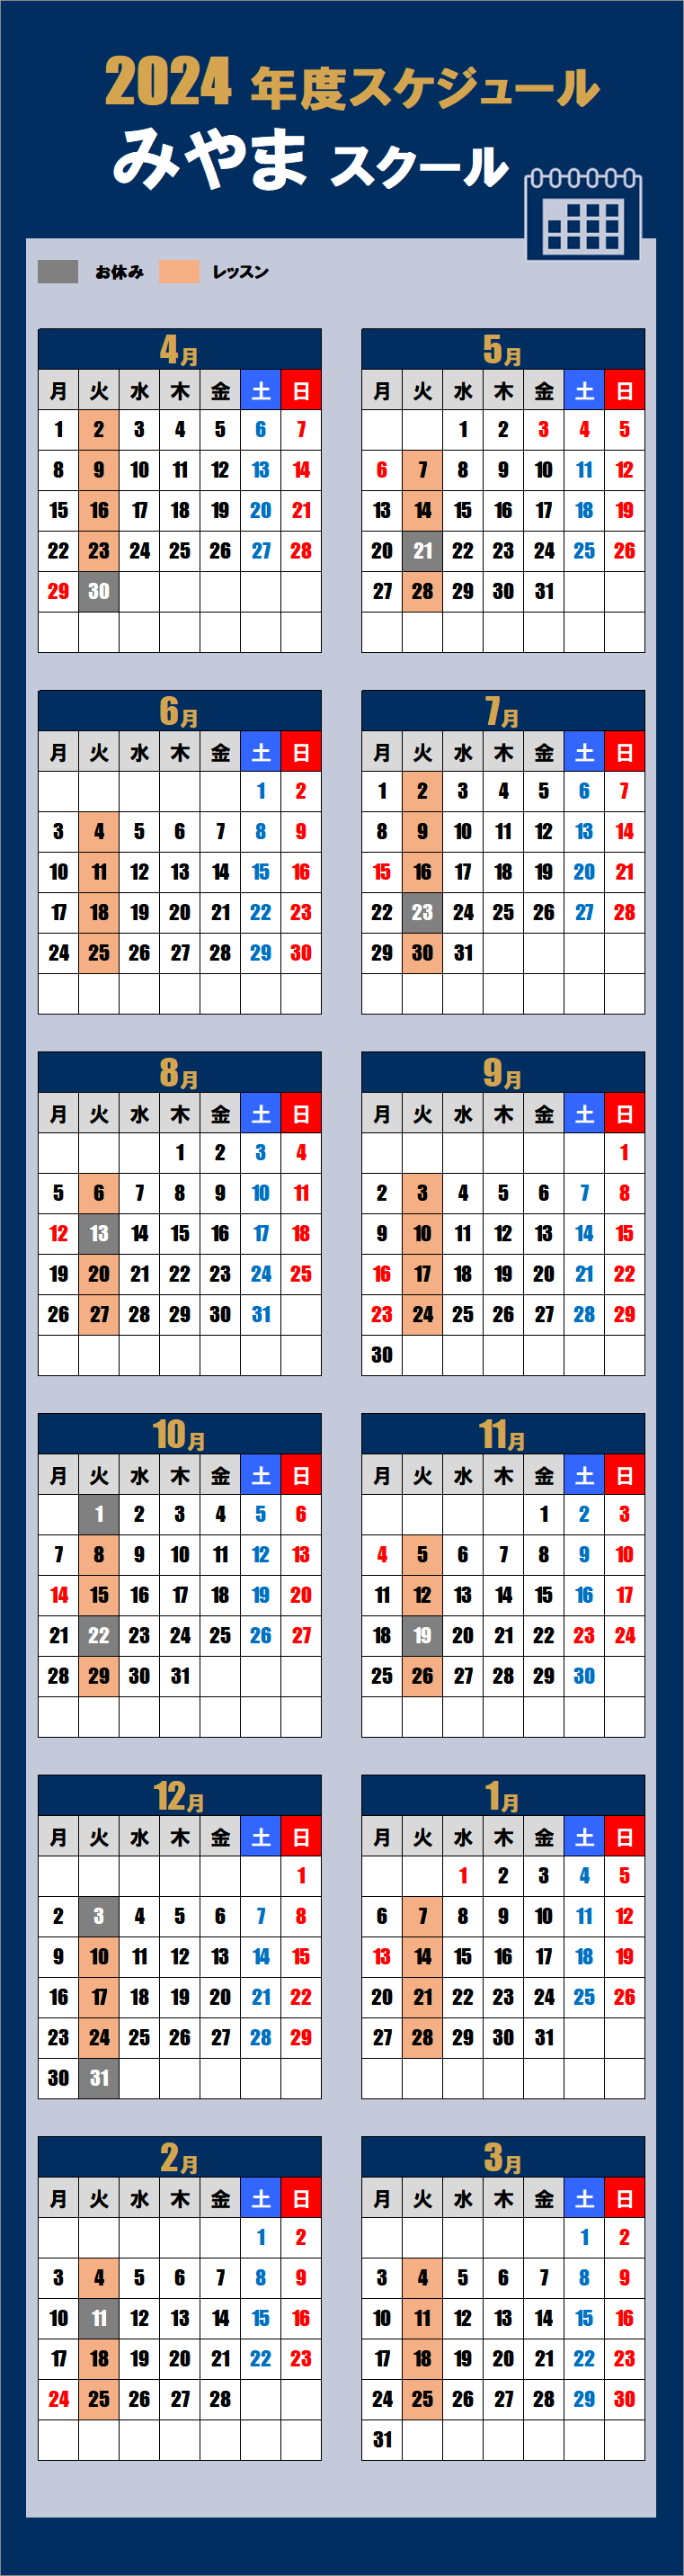 2024みやまスクールカレンダー